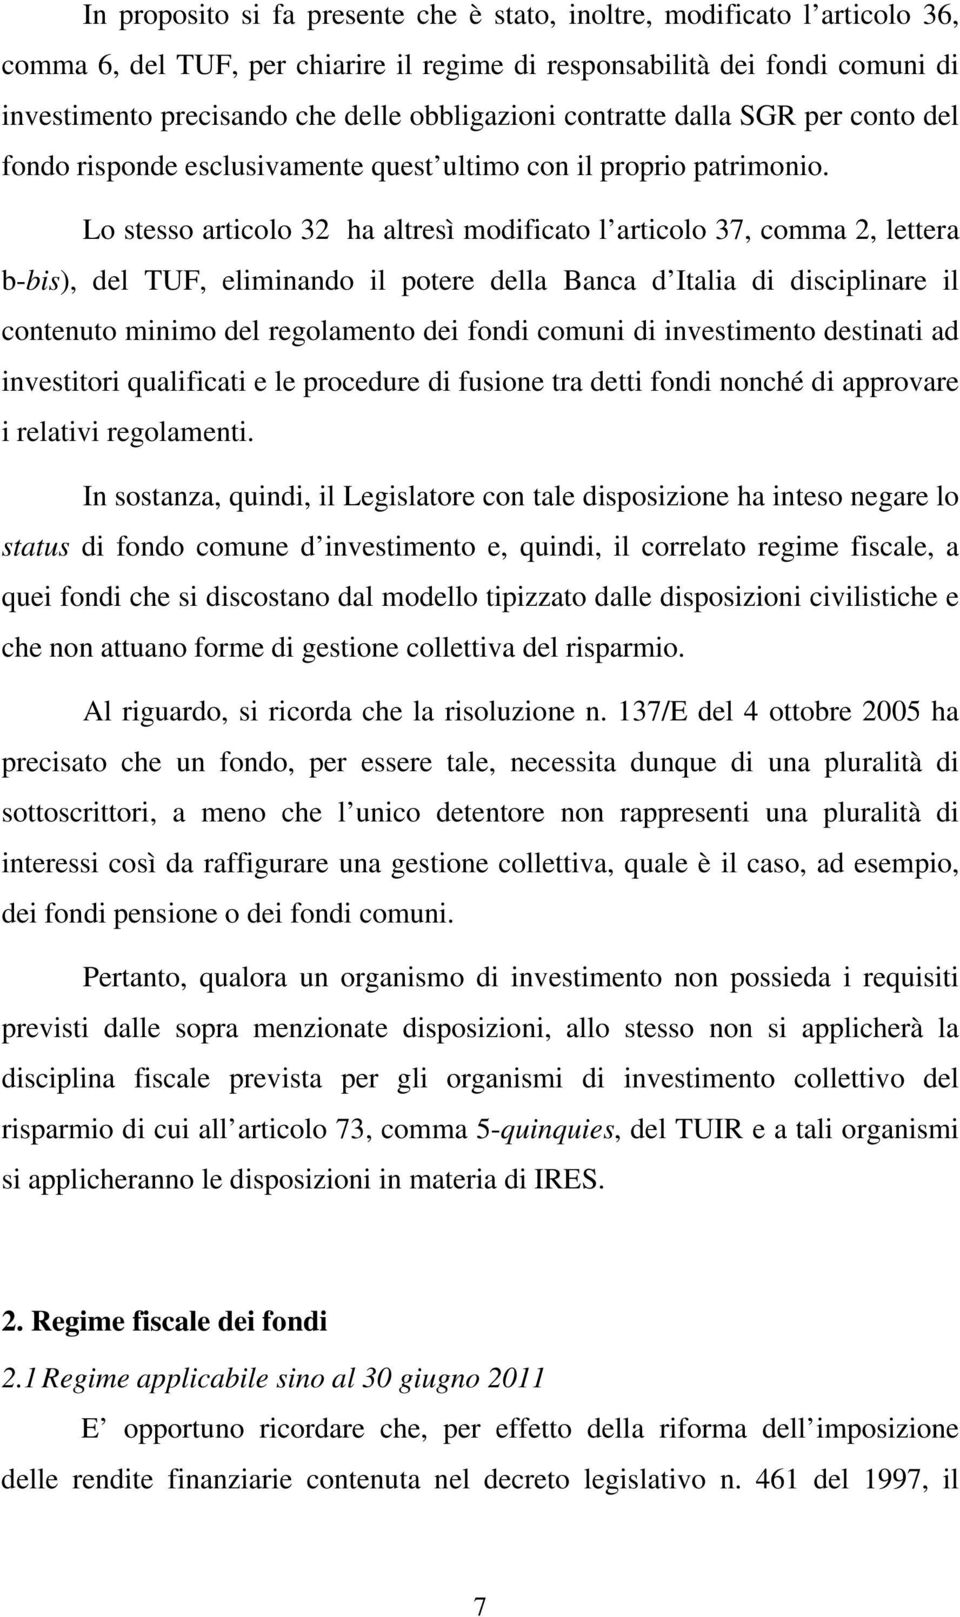 Lo stesso articolo 32 ha altresì modificato l articolo 37, comma 2, lettera b-bis), del TUF, eliminando il potere della Banca d Italia di disciplinare il contenuto minimo del regolamento dei fondi